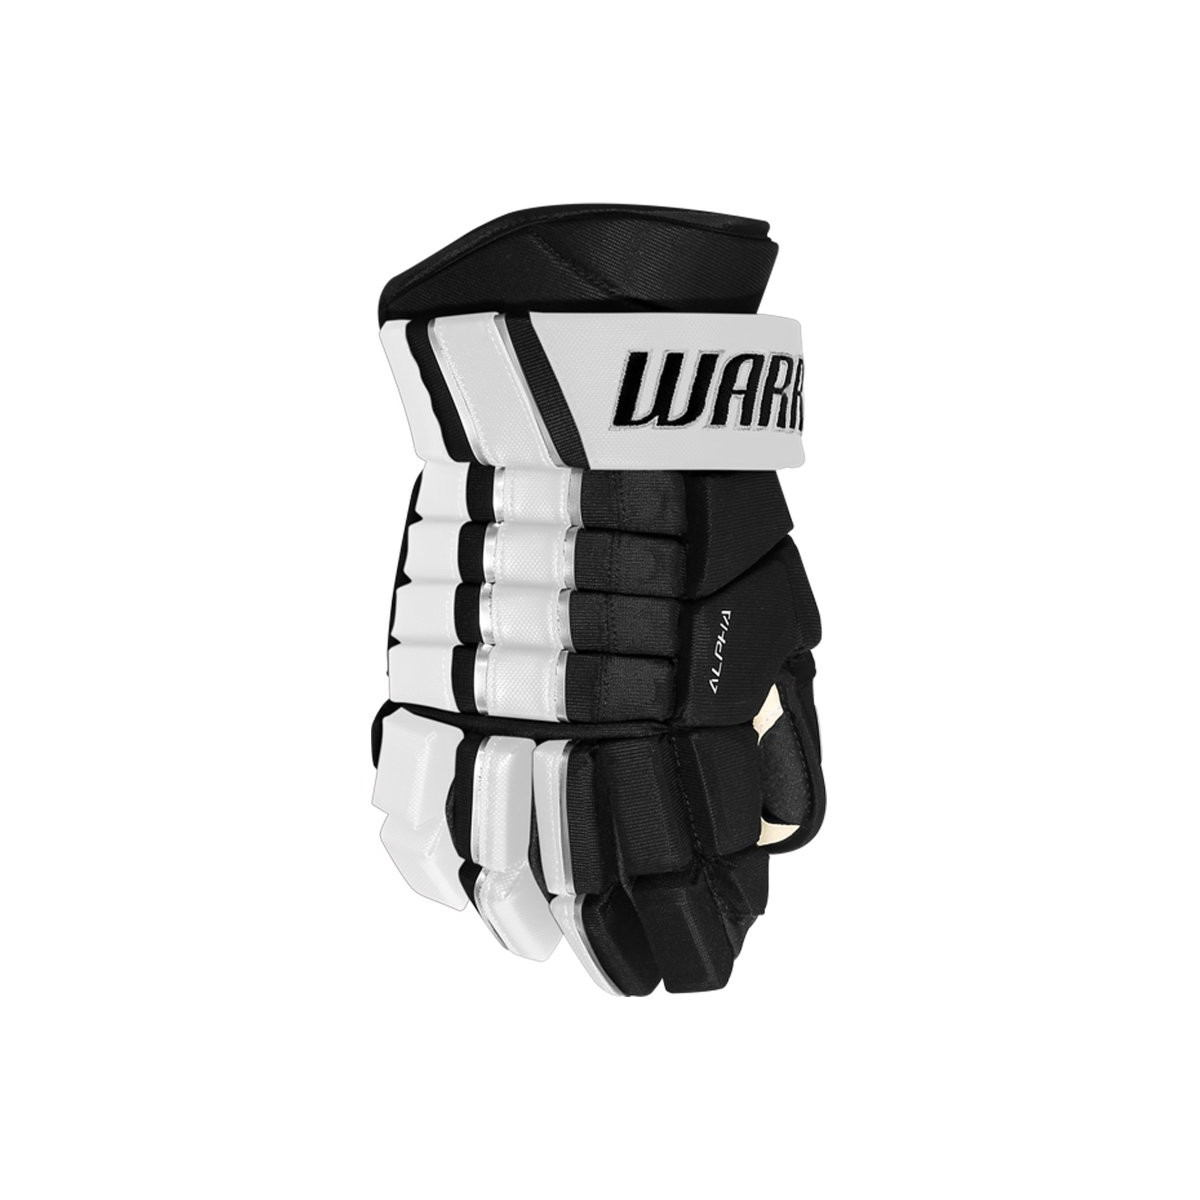 Warrior FR Pro Sr Glove